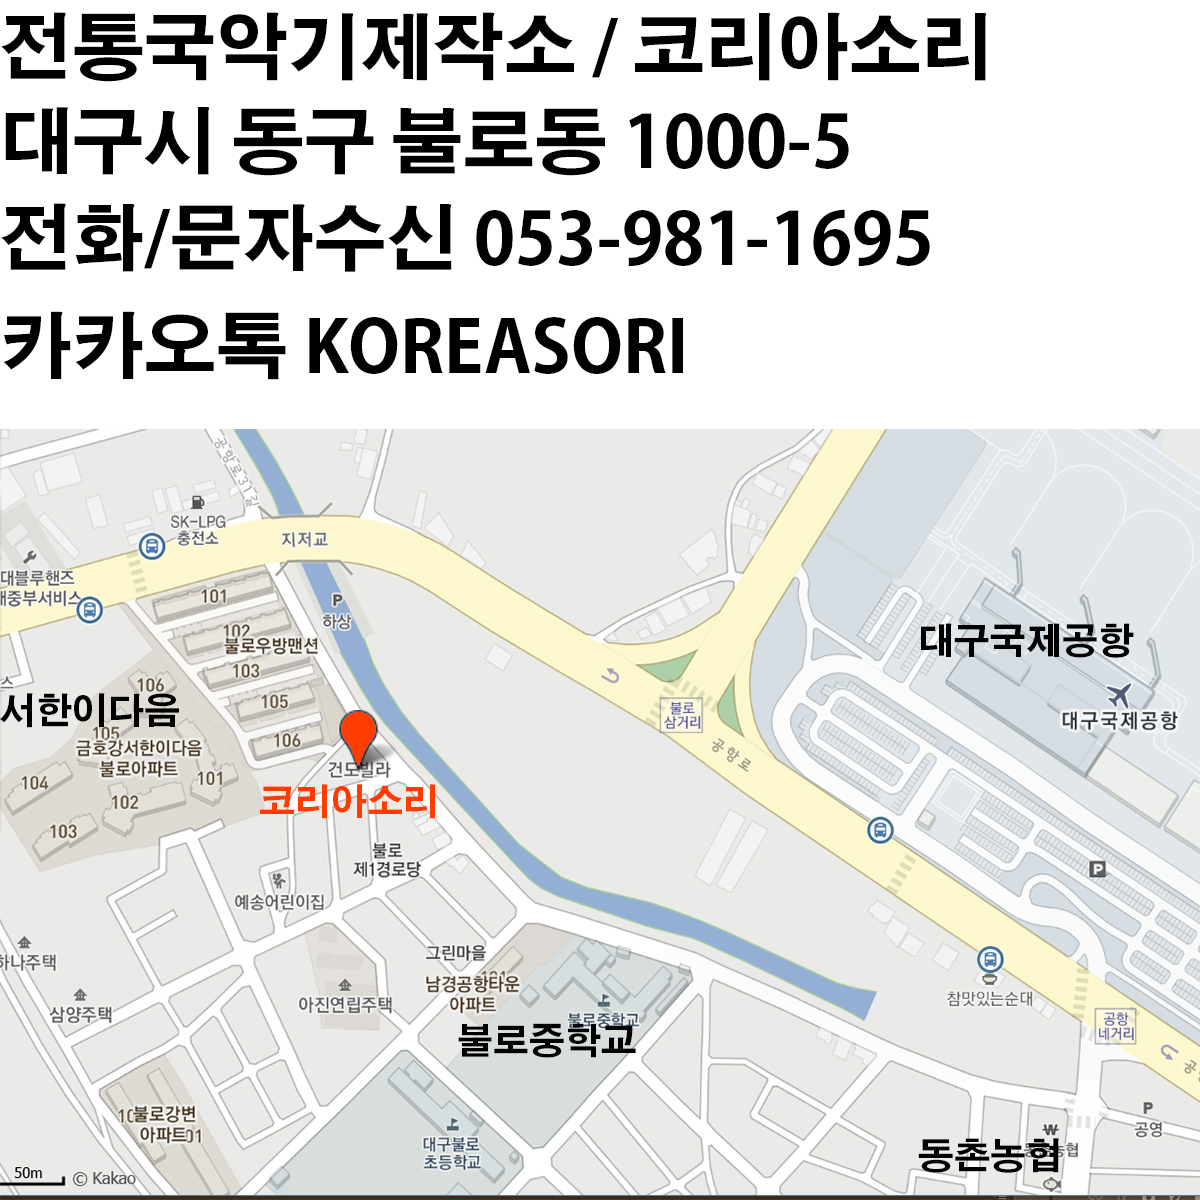 초등5.6년용 박달공이 대나무 장구궁채 장구채 / SHD-DJA140A